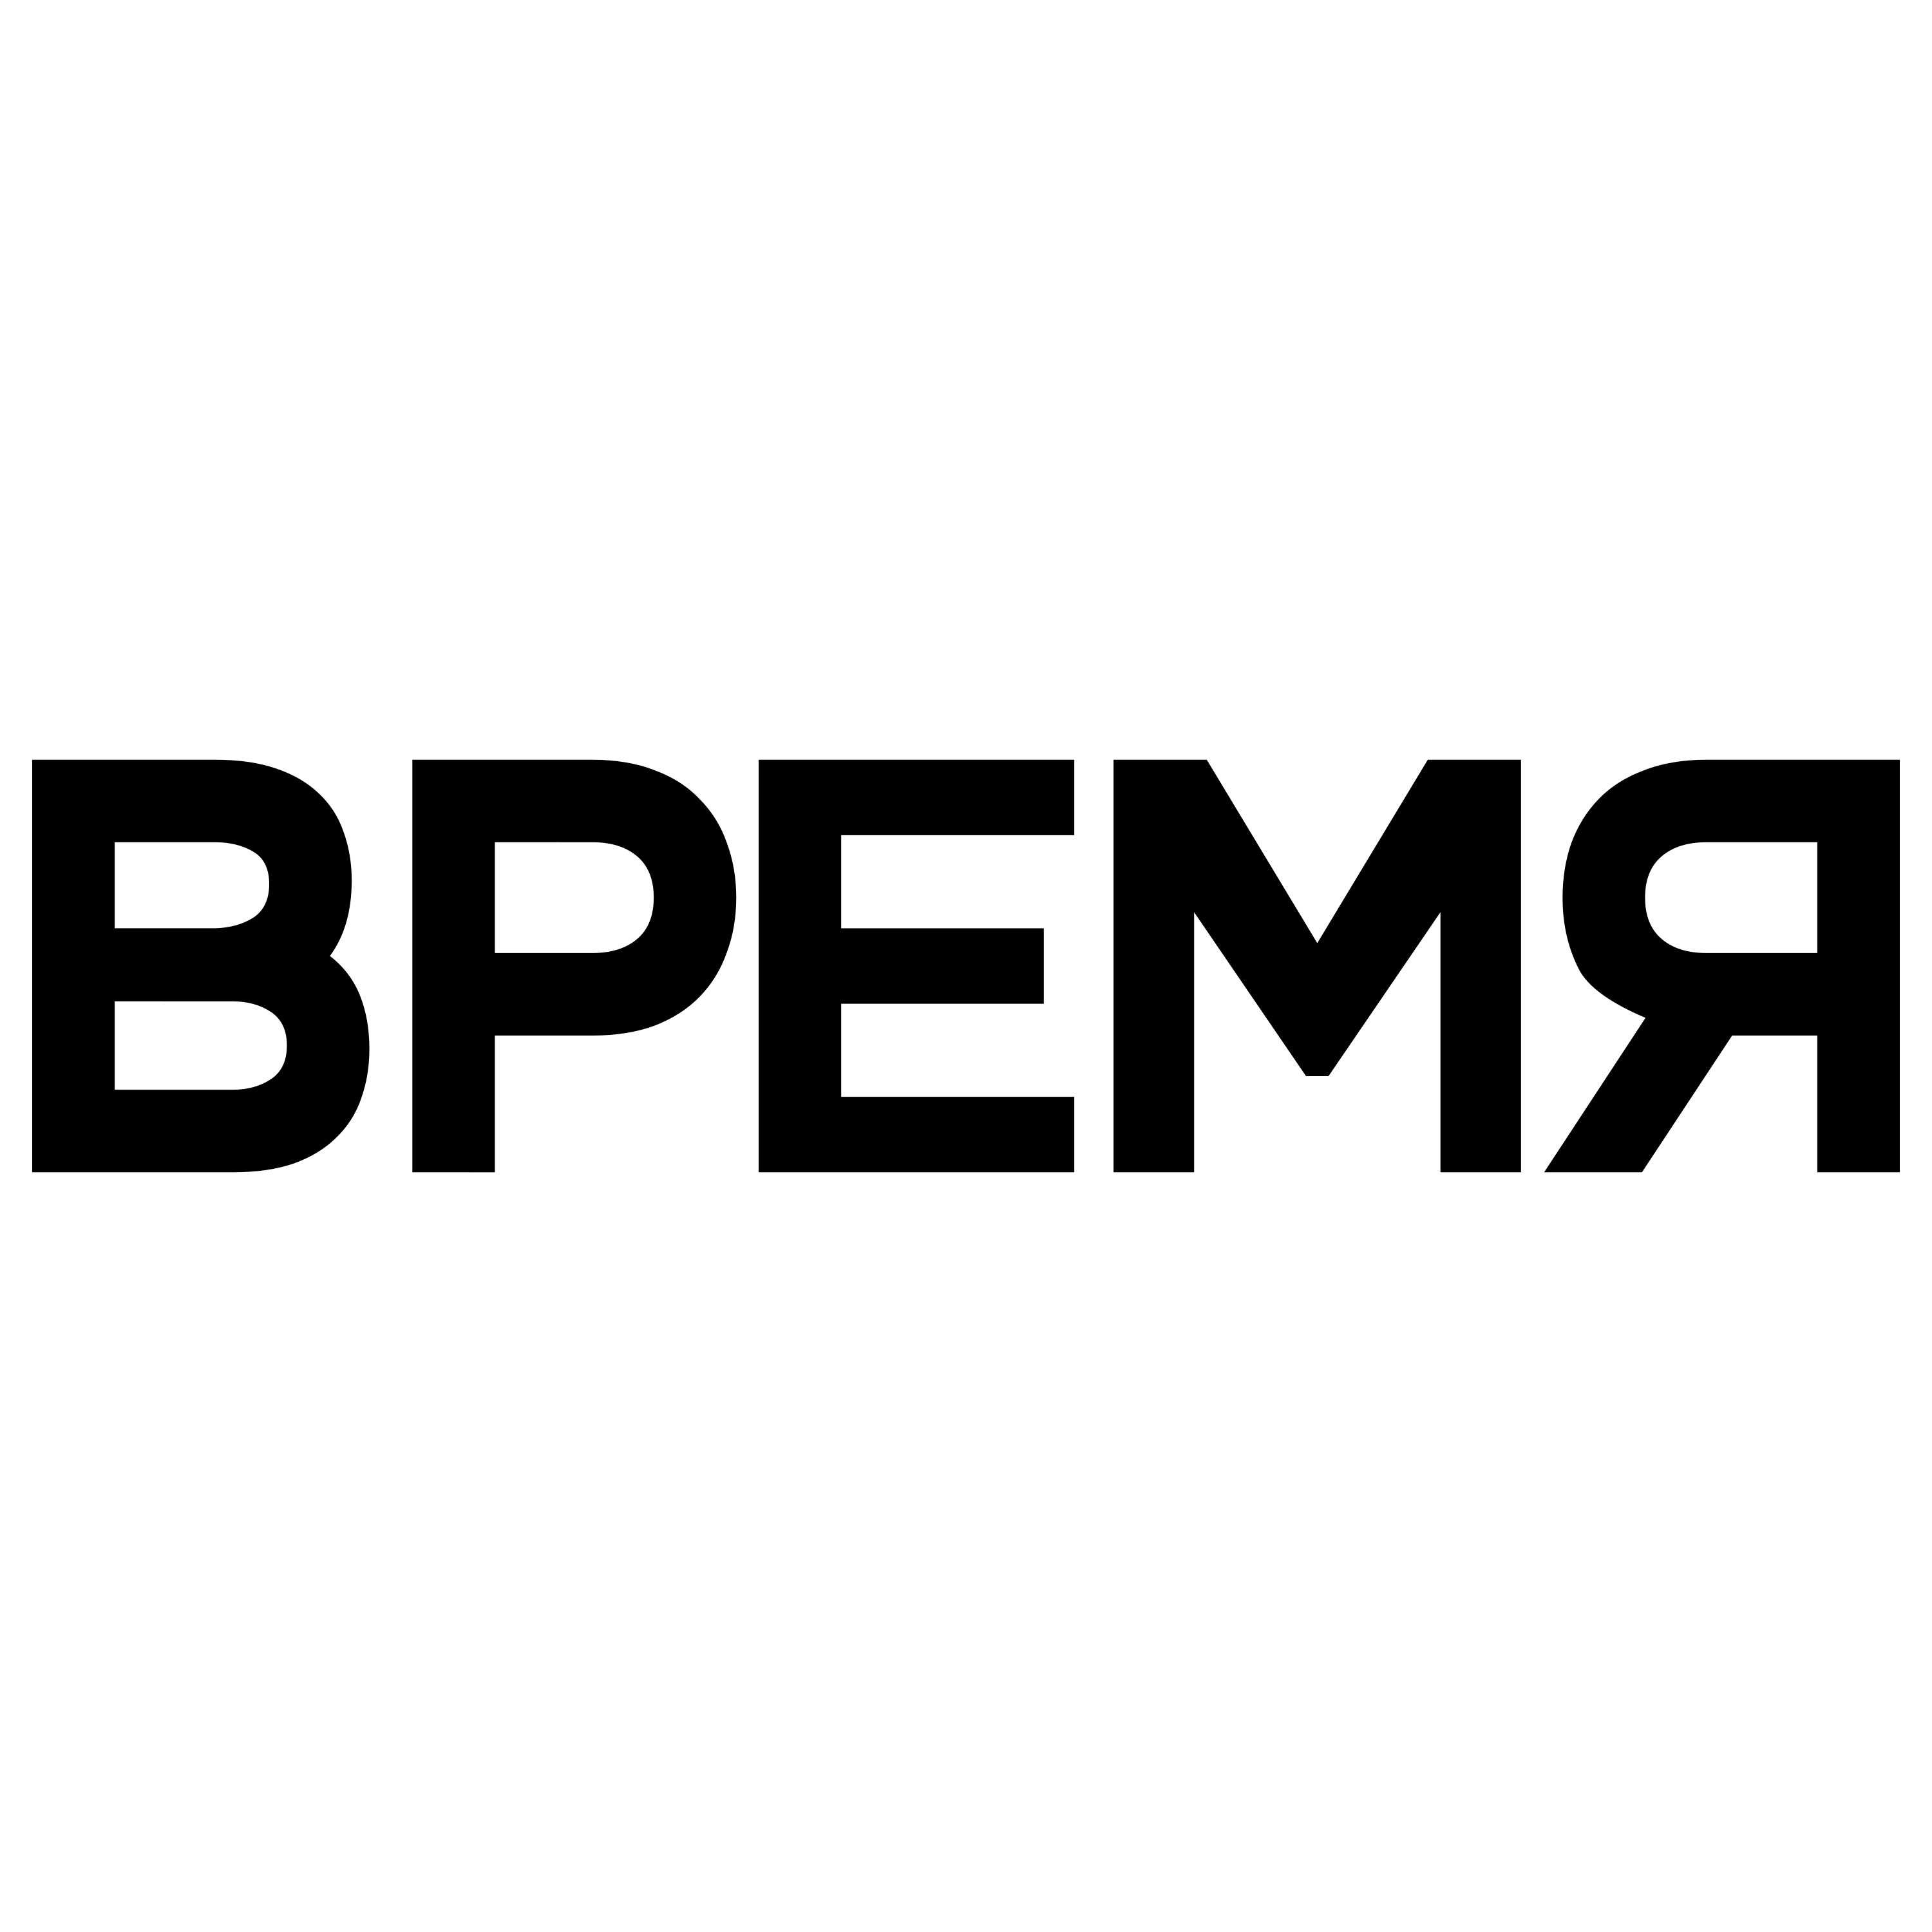 Vremya Logo  Transparent Image